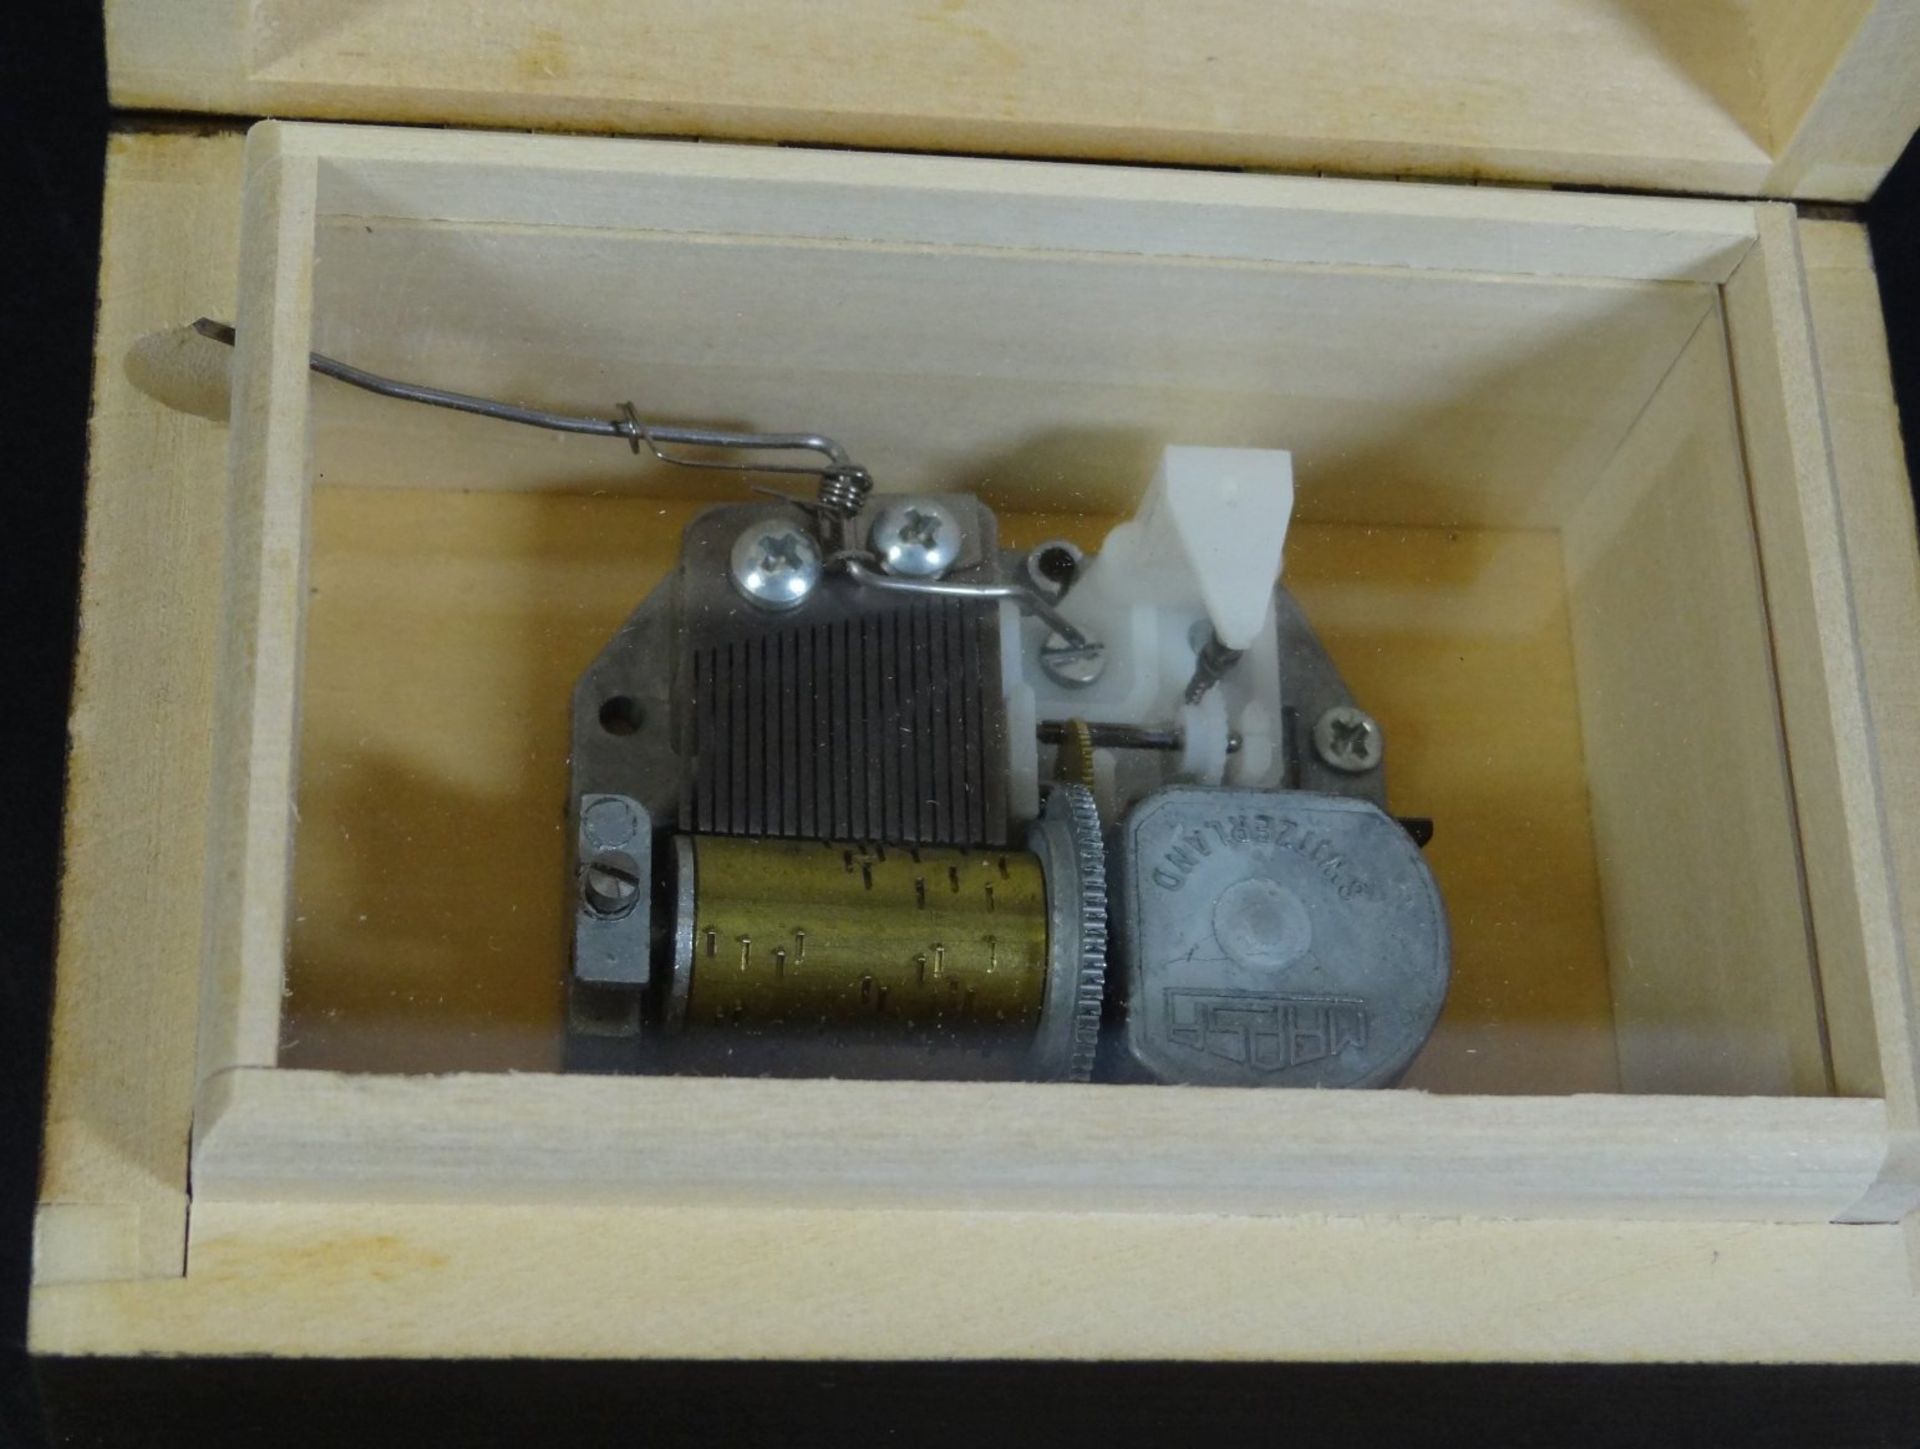 kl. Kasten mit Spieluhr, H-6 cm, B-11 cm - Bild 4 aus 6